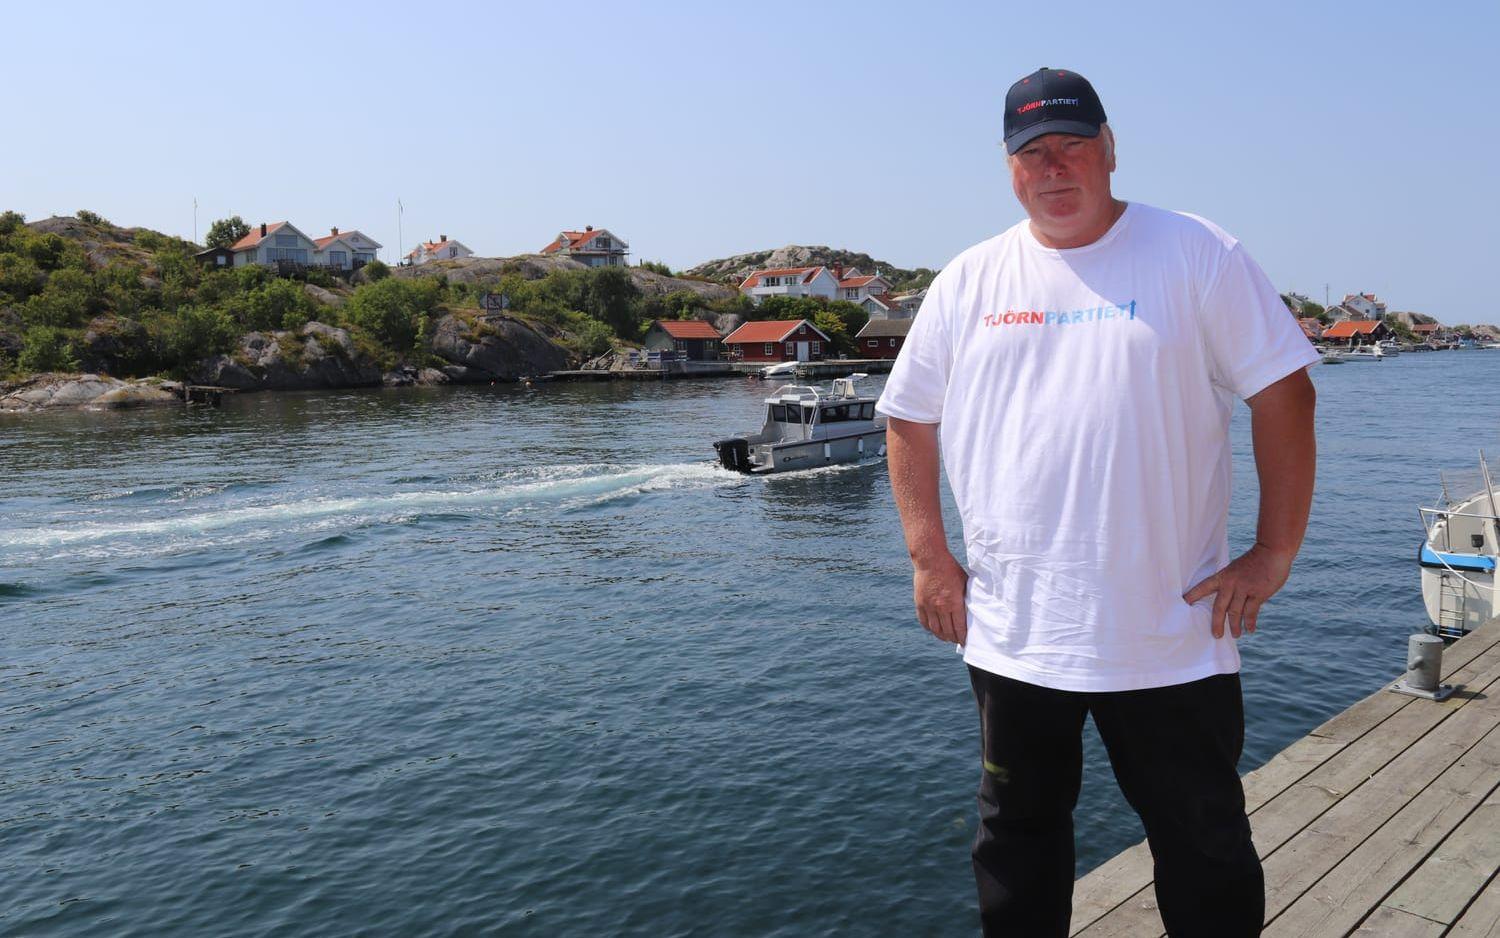 Gert Kjellberg på bryggan i Rönnäng som för honom symboliserar både det gamla fiskesamhället och ett populärt utflyktsmål för både inhemska och utländska turister som vill besöka platsen eller de närliggande öarna.